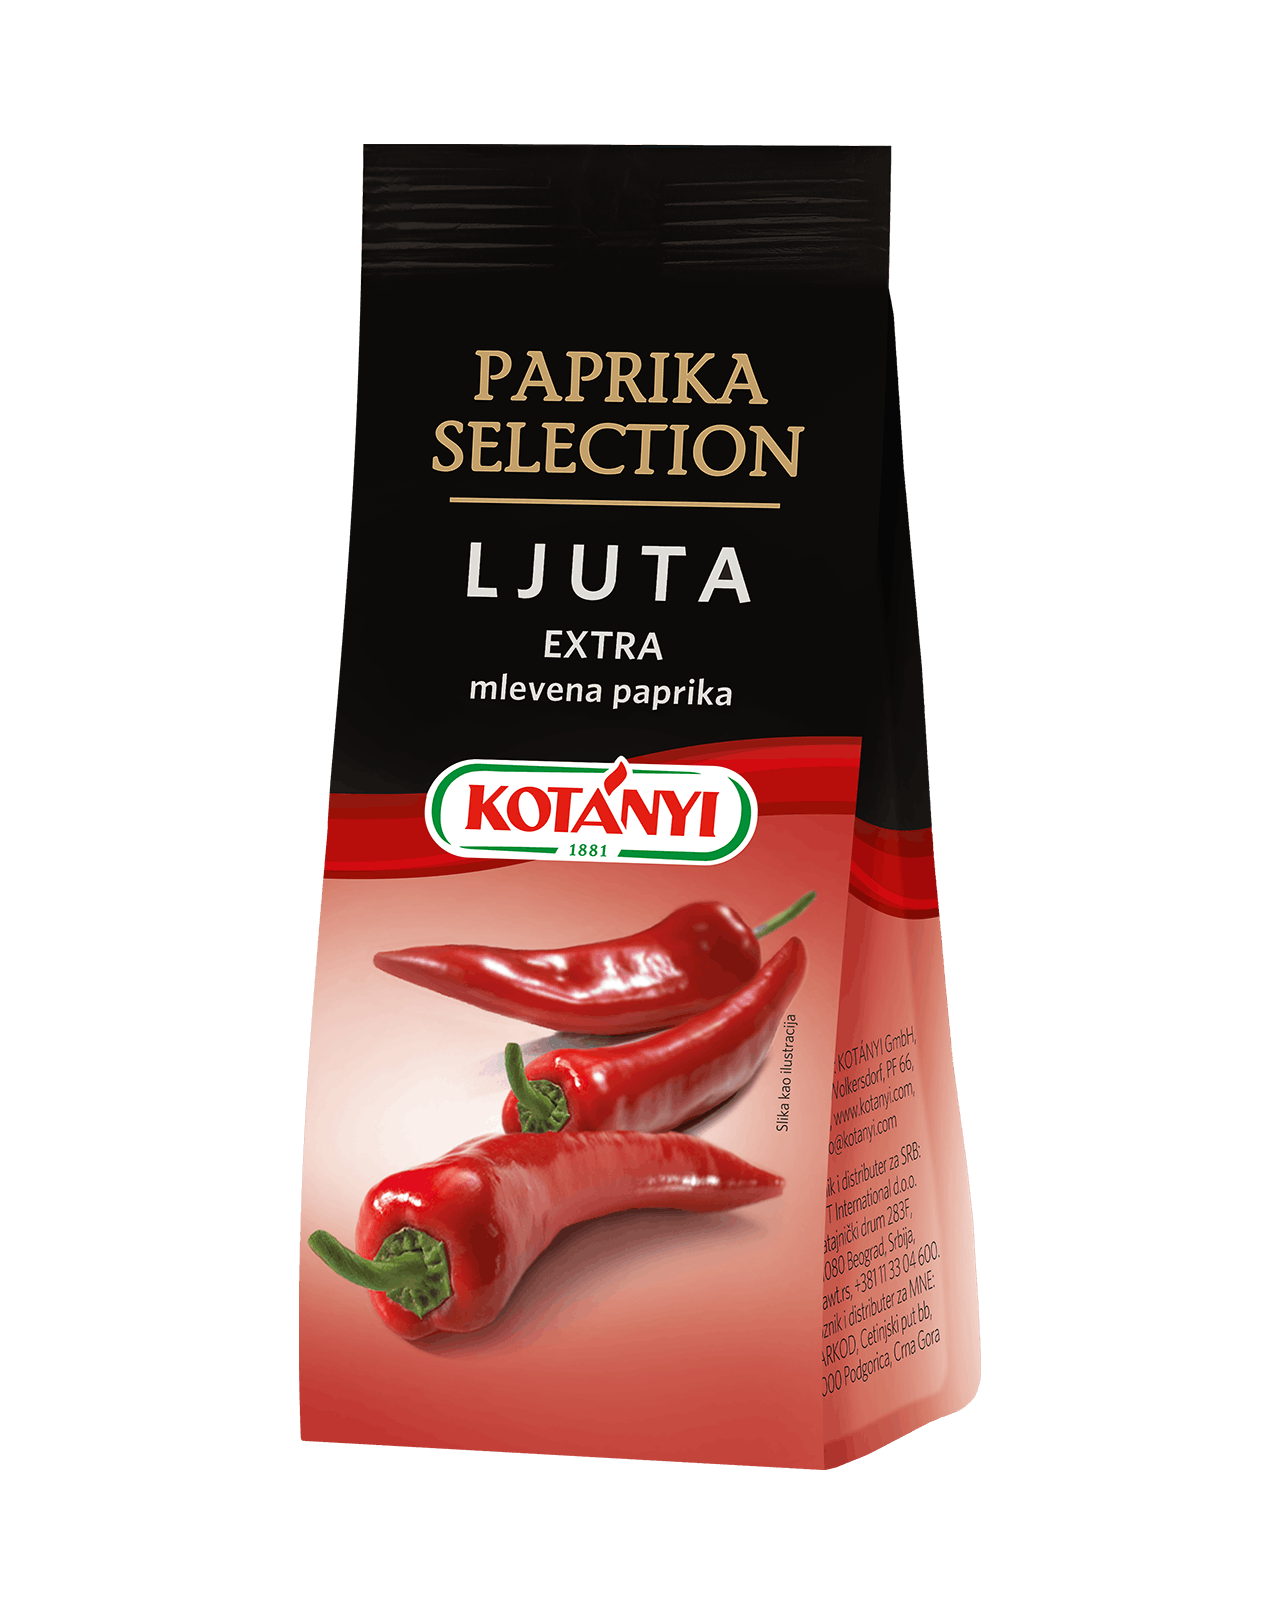 094012 Kotanyi Paprika Selection Ljuta B2c Stabilo Bag